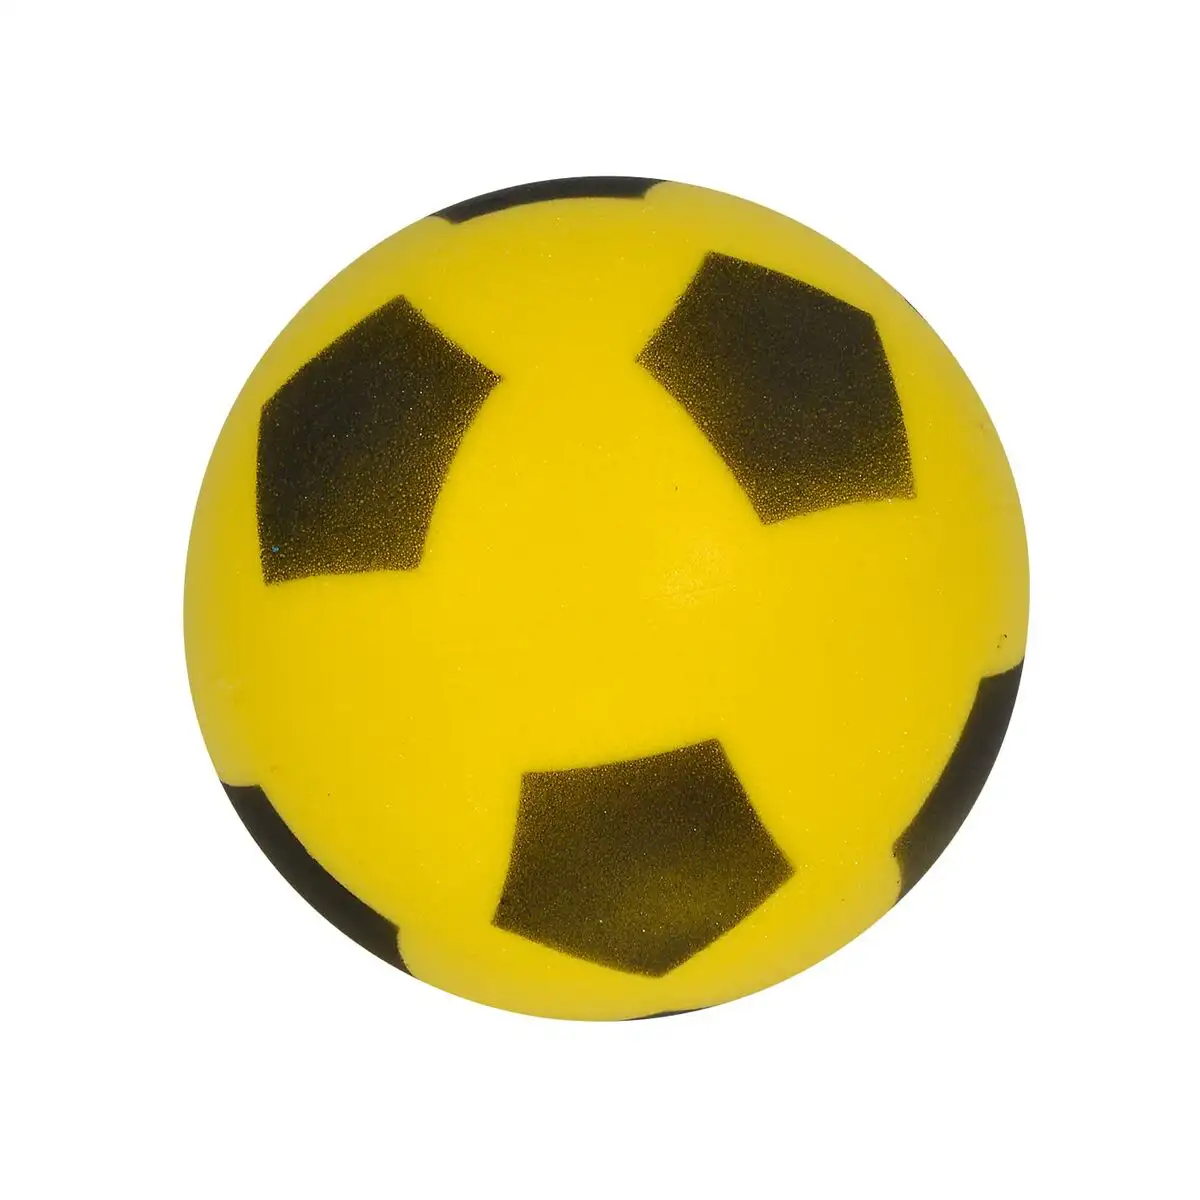 Ballon de football simba ani5976 jaune reconditionne a _8004. DIAYTAR SENEGAL - Votre Escapade Shopping Virtuelle. Explorez notre boutique en ligne et dénichez des trésors qui évoquent la culture et le savoir-faire sénégalais, un clic à la fois.